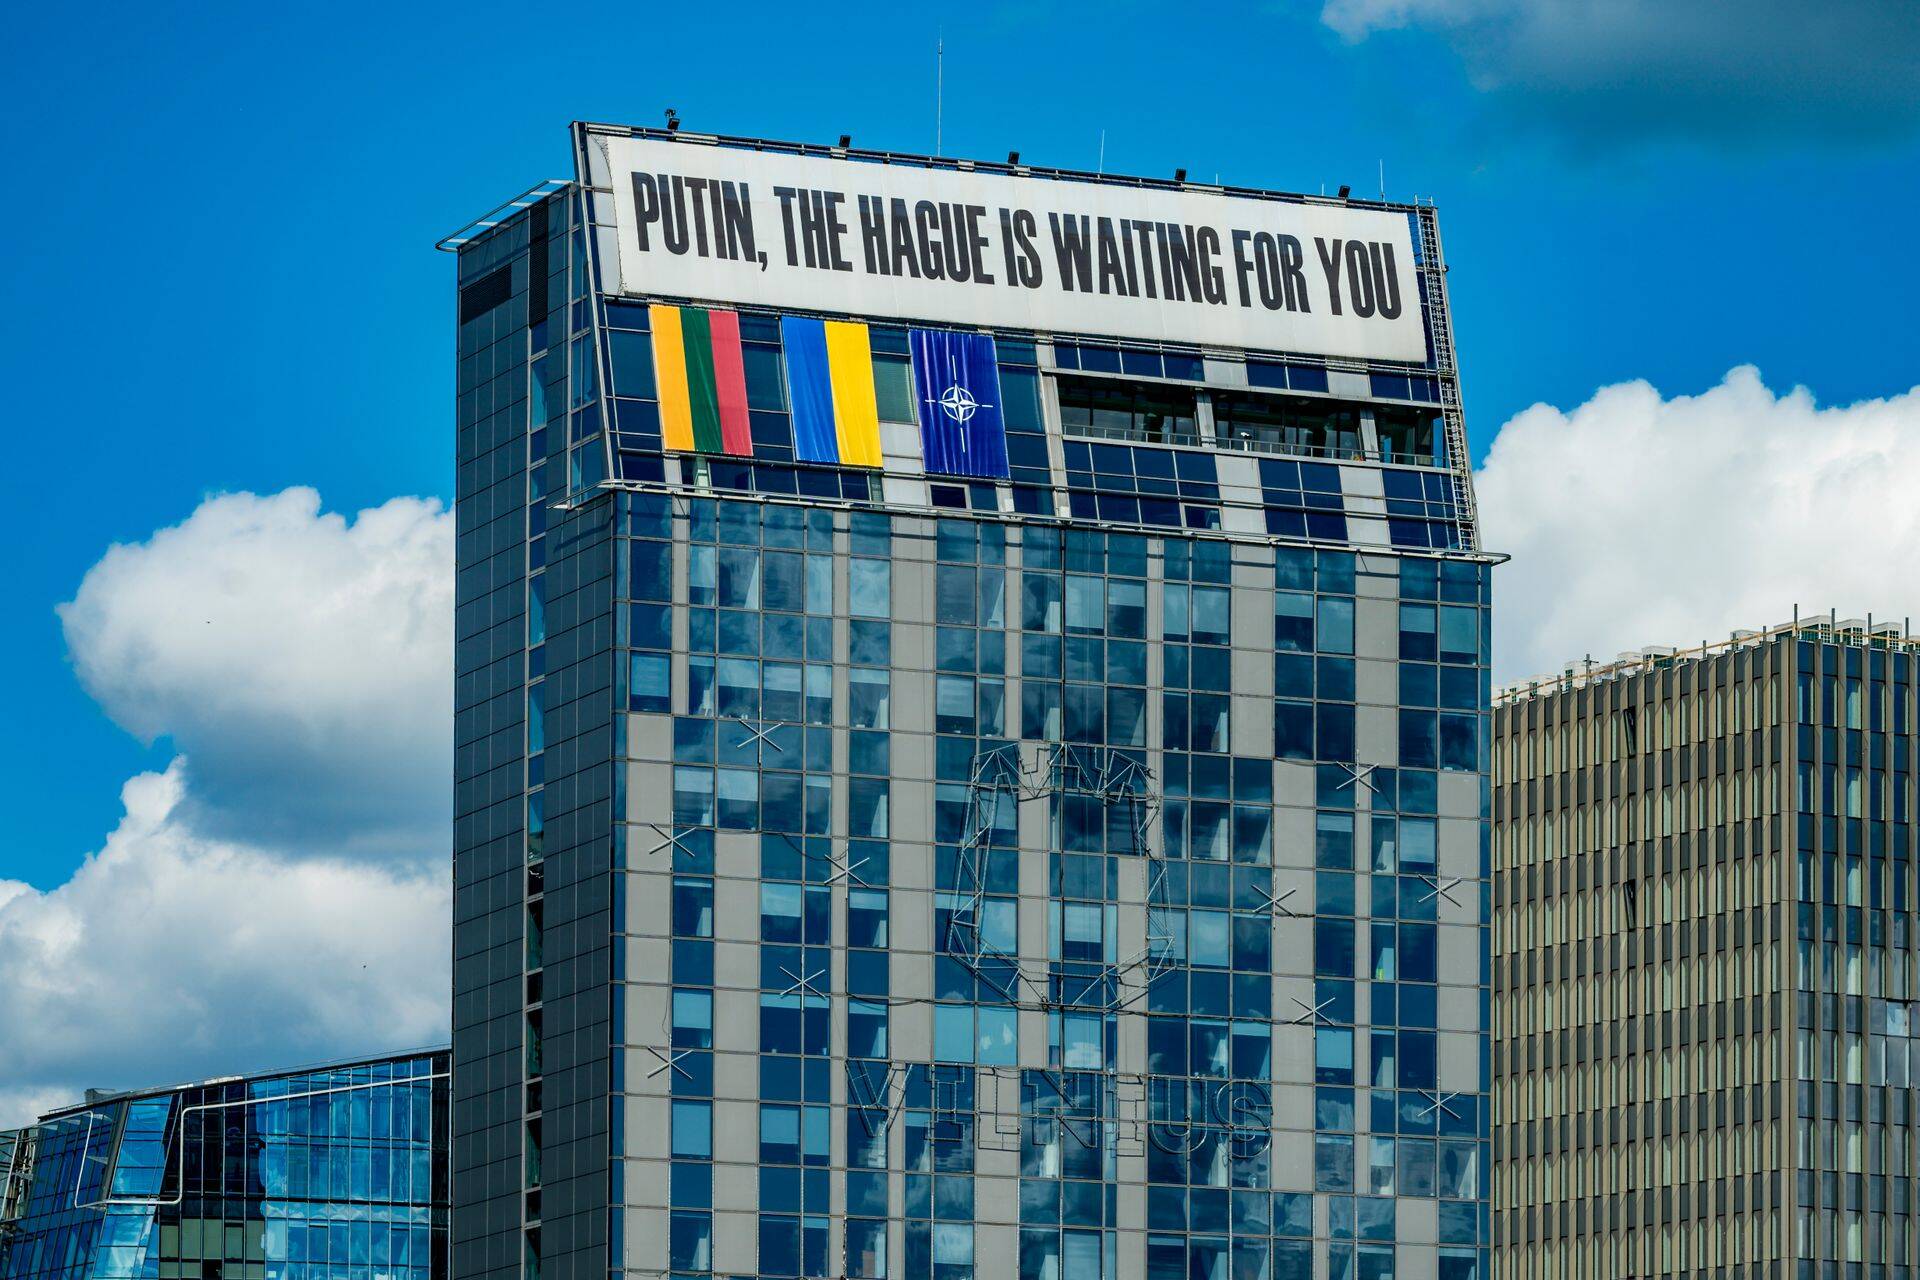 Vilniuse linnapildis on meelsus selge: Ukraina koht on NATOs ja Putini oma Haagi sõjatribunali ees.